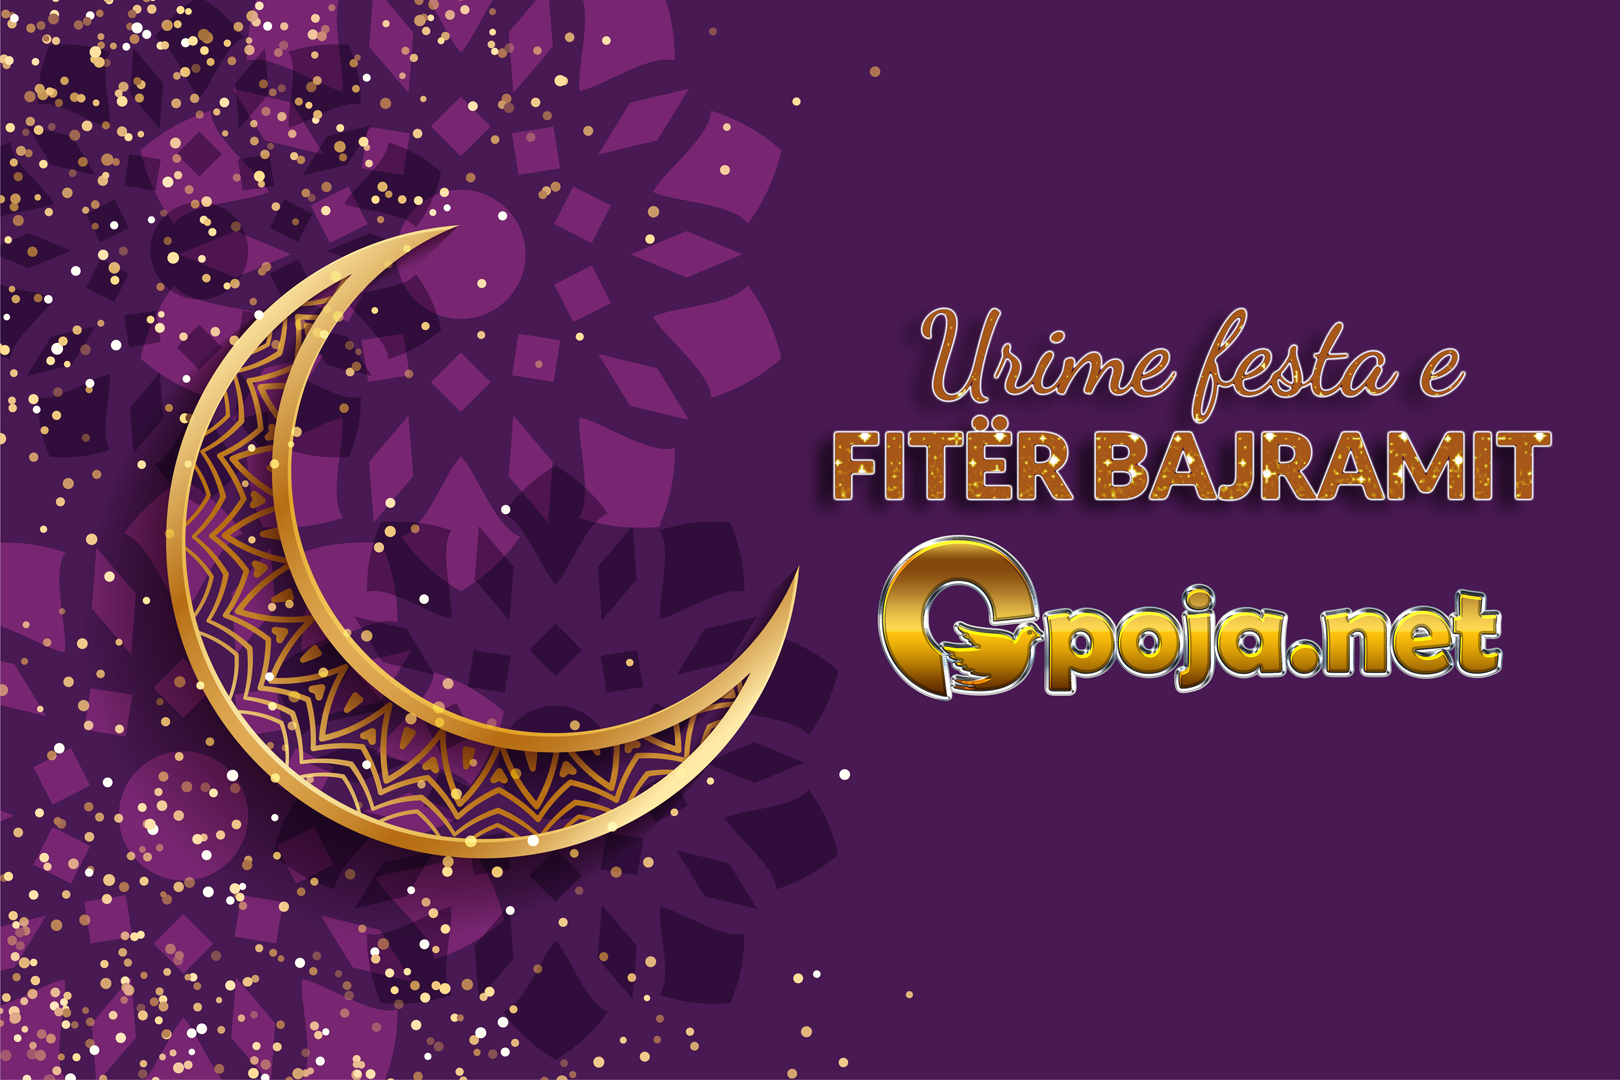 Të gjithë besimtarëve muslimanë urime Fitër Bajrami nga Portali Opoja.net